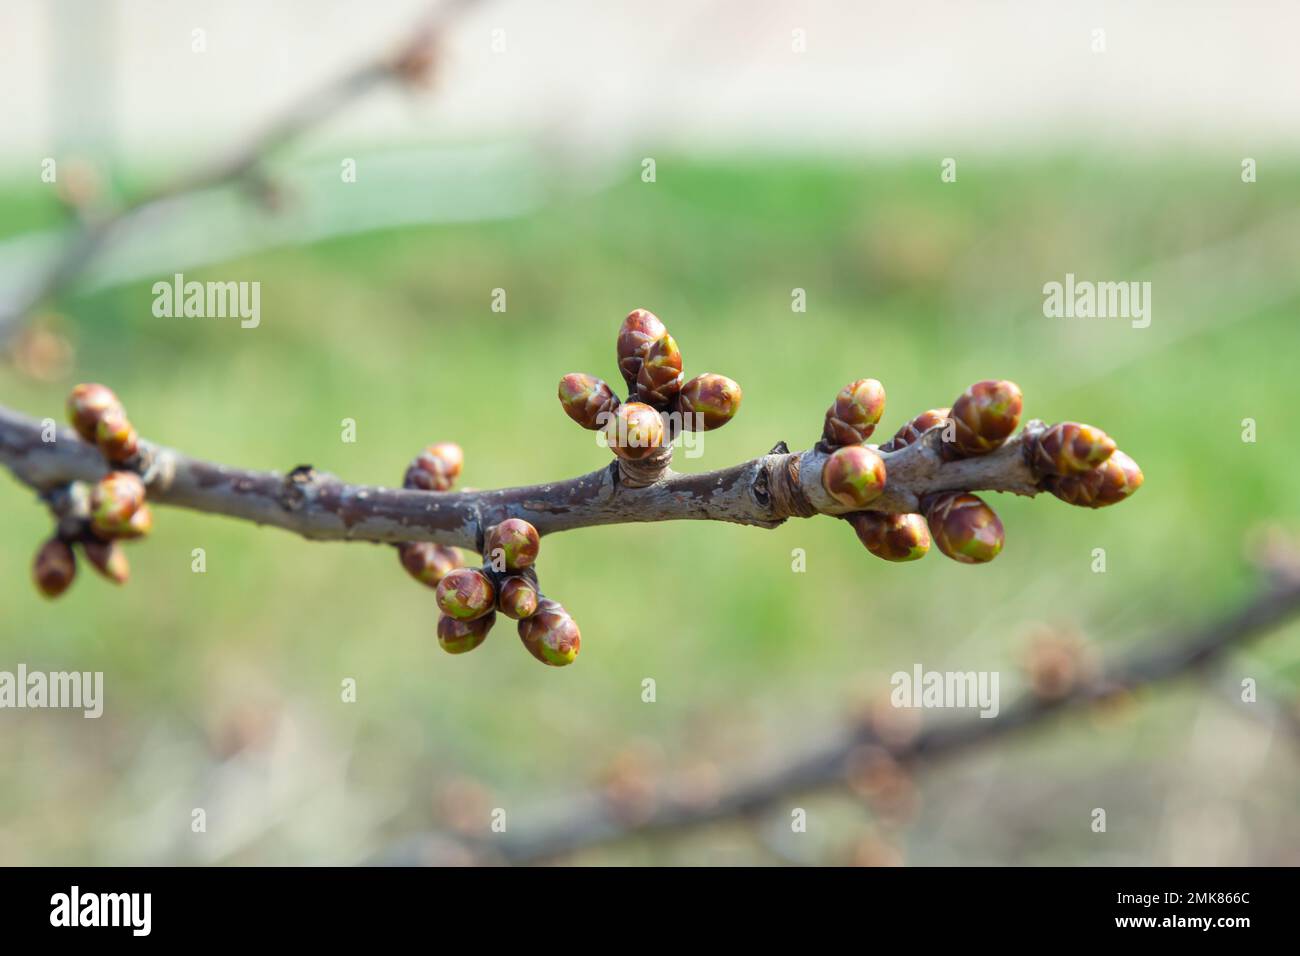 germogli germoglianti su un ramo di albero nella macro primaverile. Foto Stock